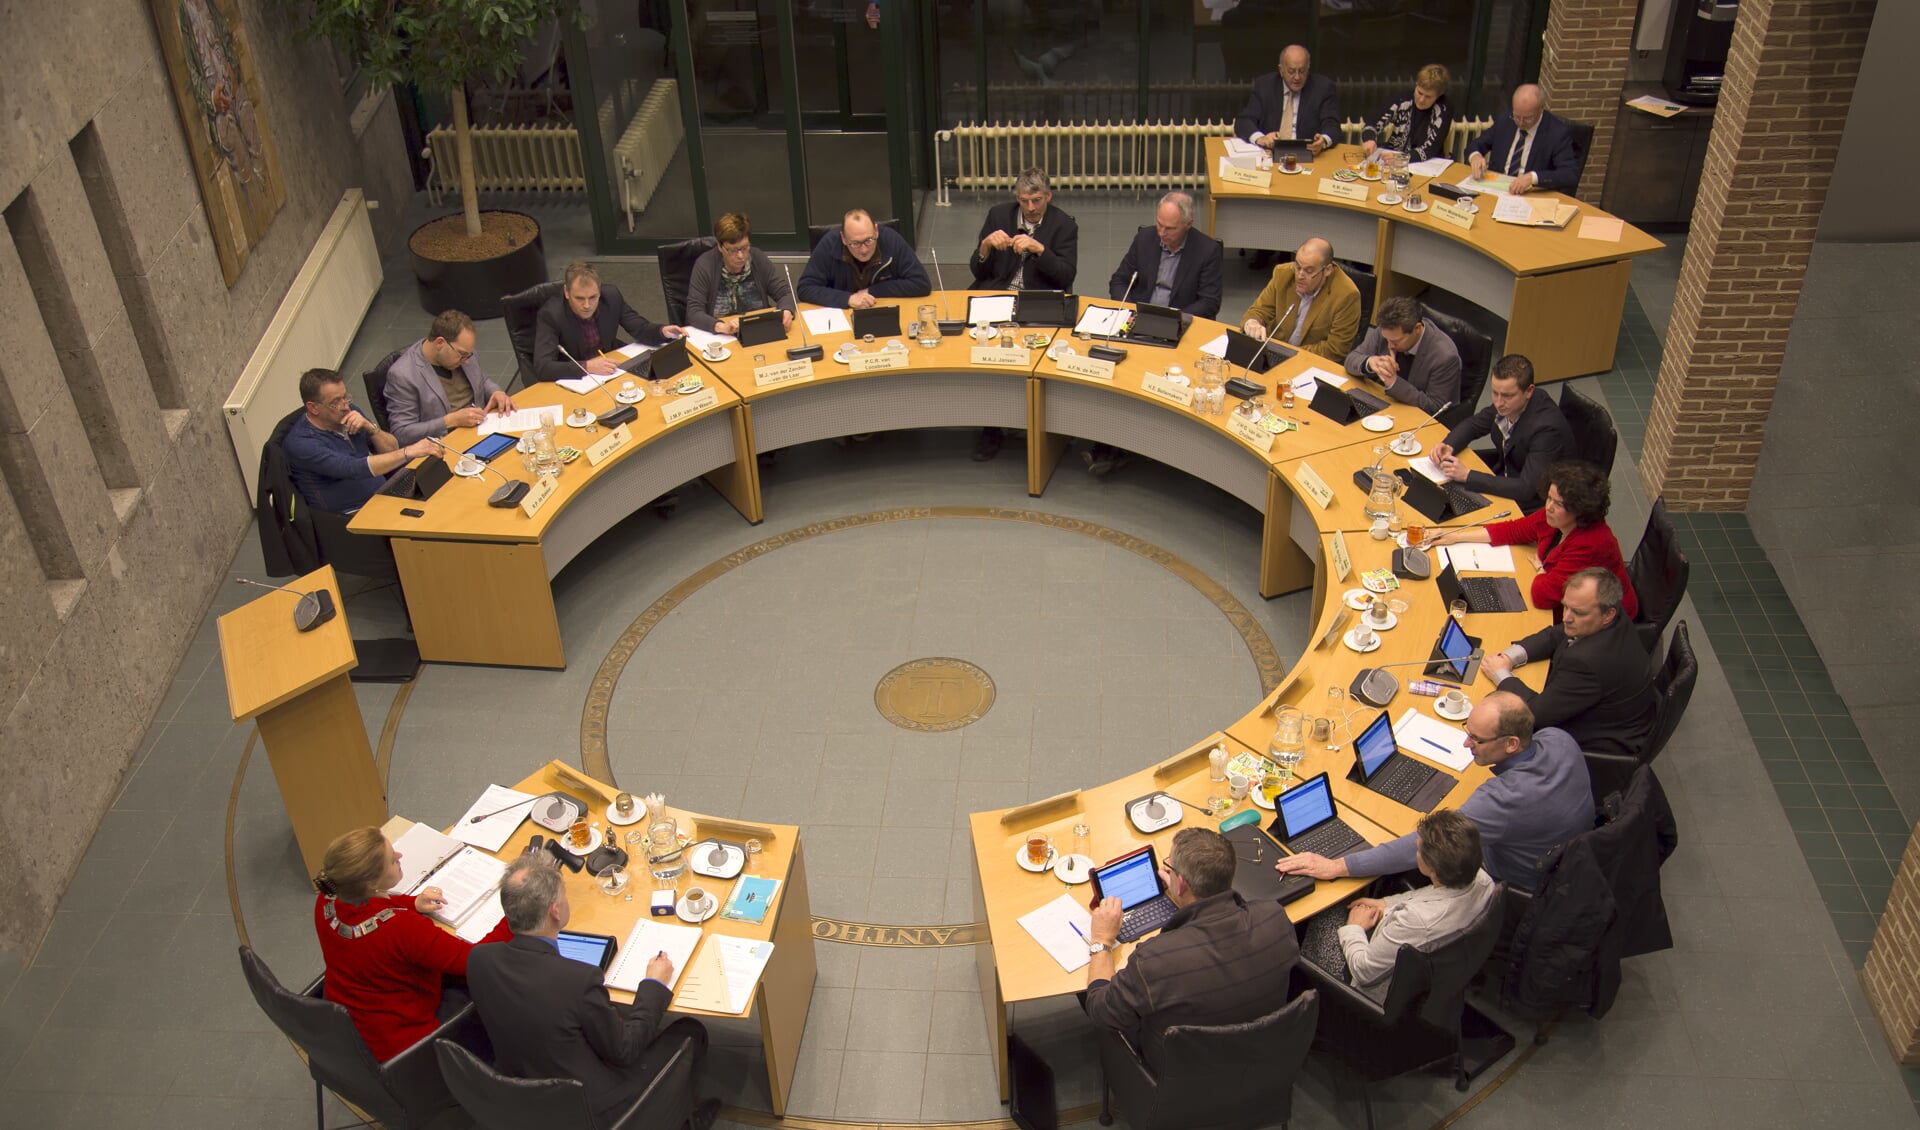 De gemeenteraad van Sint Anthonis houdt op 30 januari een gemeentegesprek.